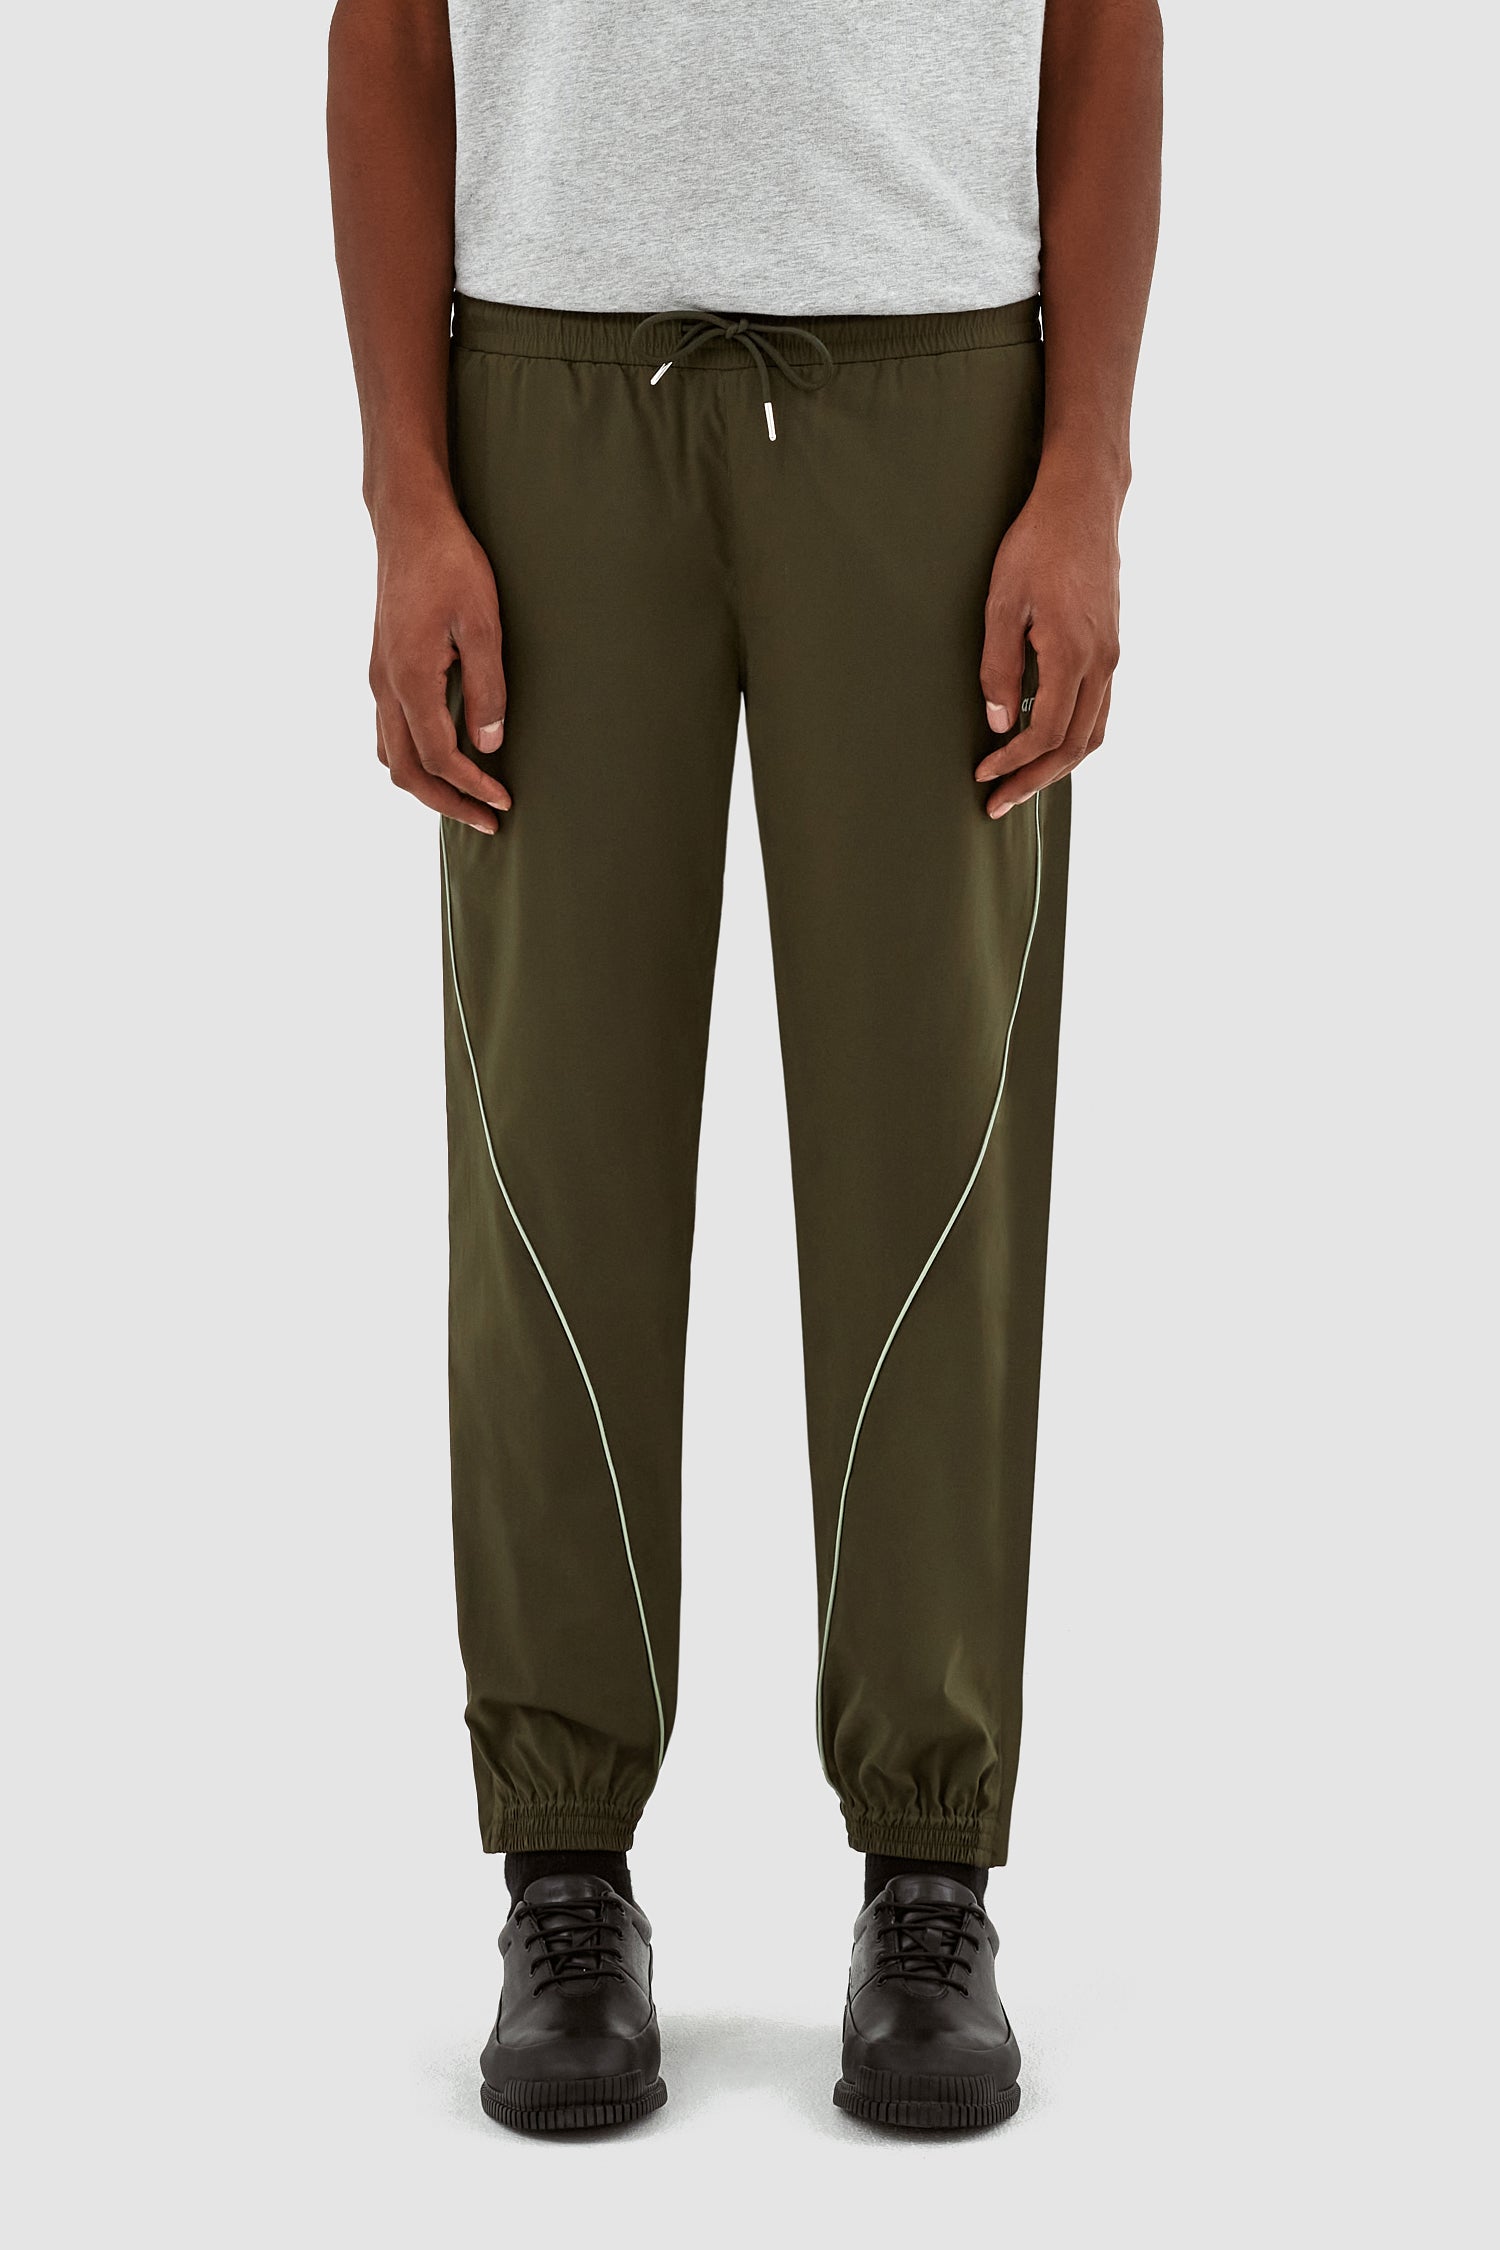 Pantalon Jordan AW23 - Vert/Vert clair